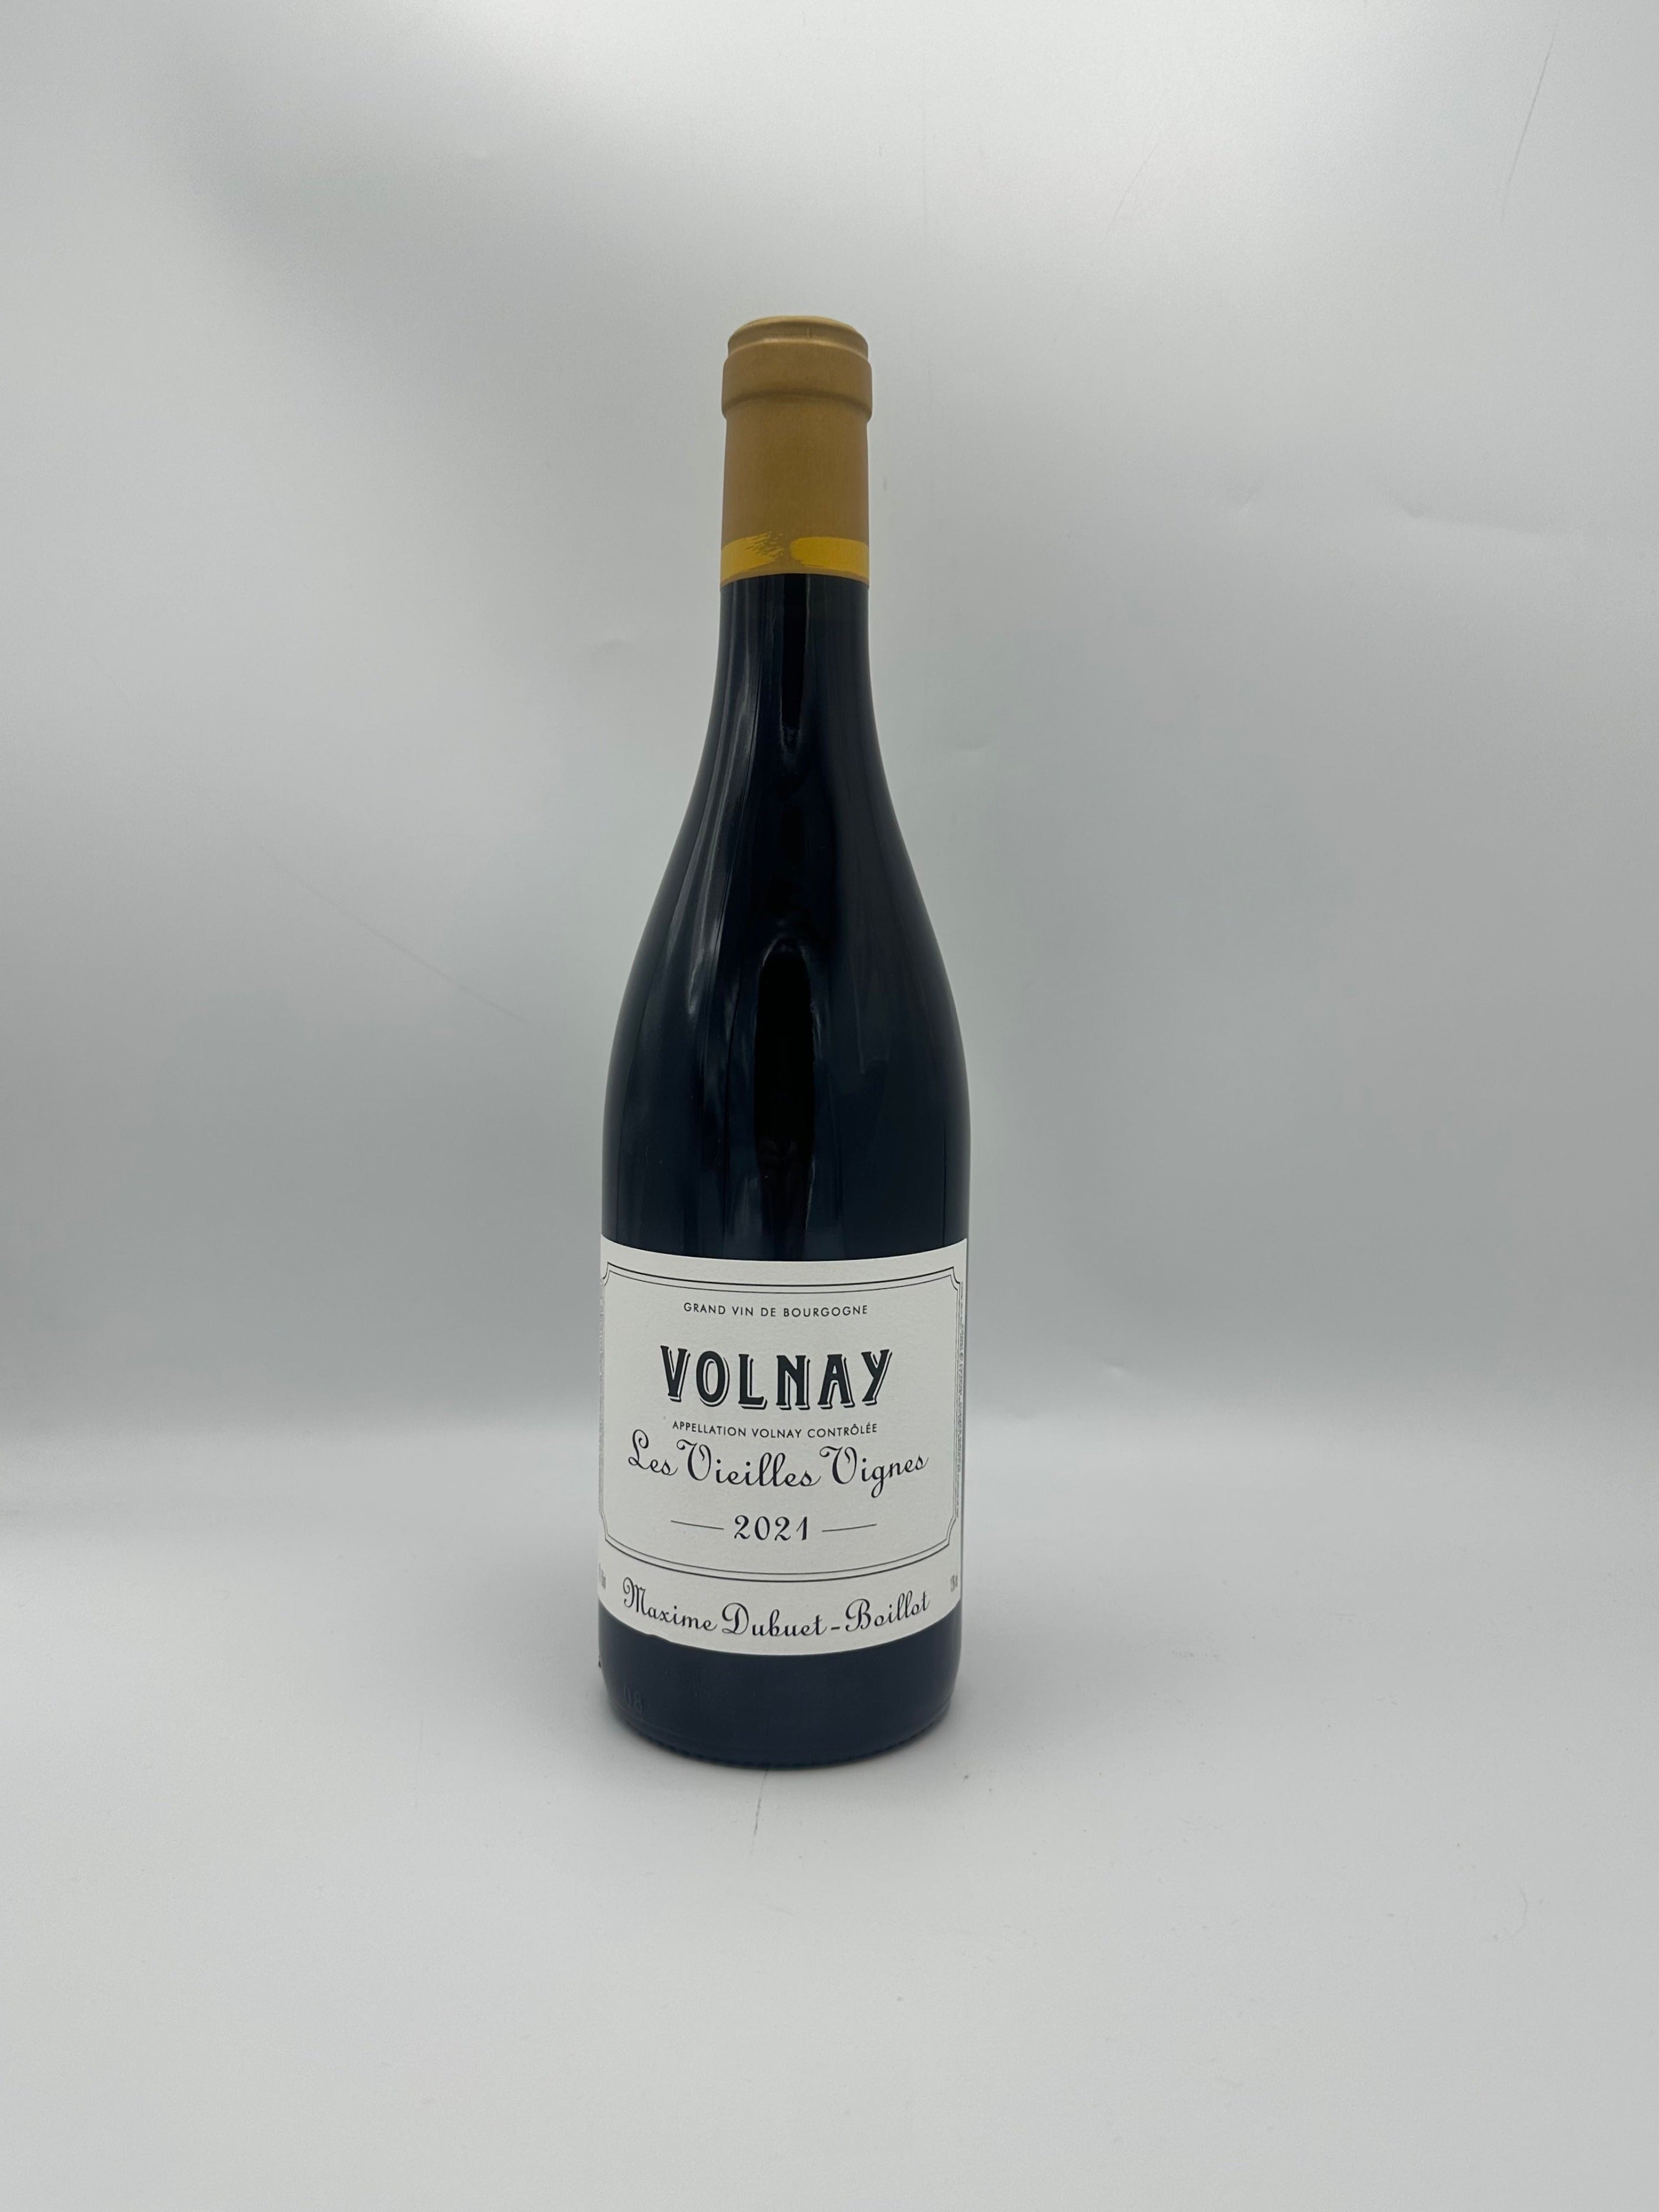 Volnay "Les Vieilles Vignes" 2021 Rouge - Maxime Dubuet Boillot